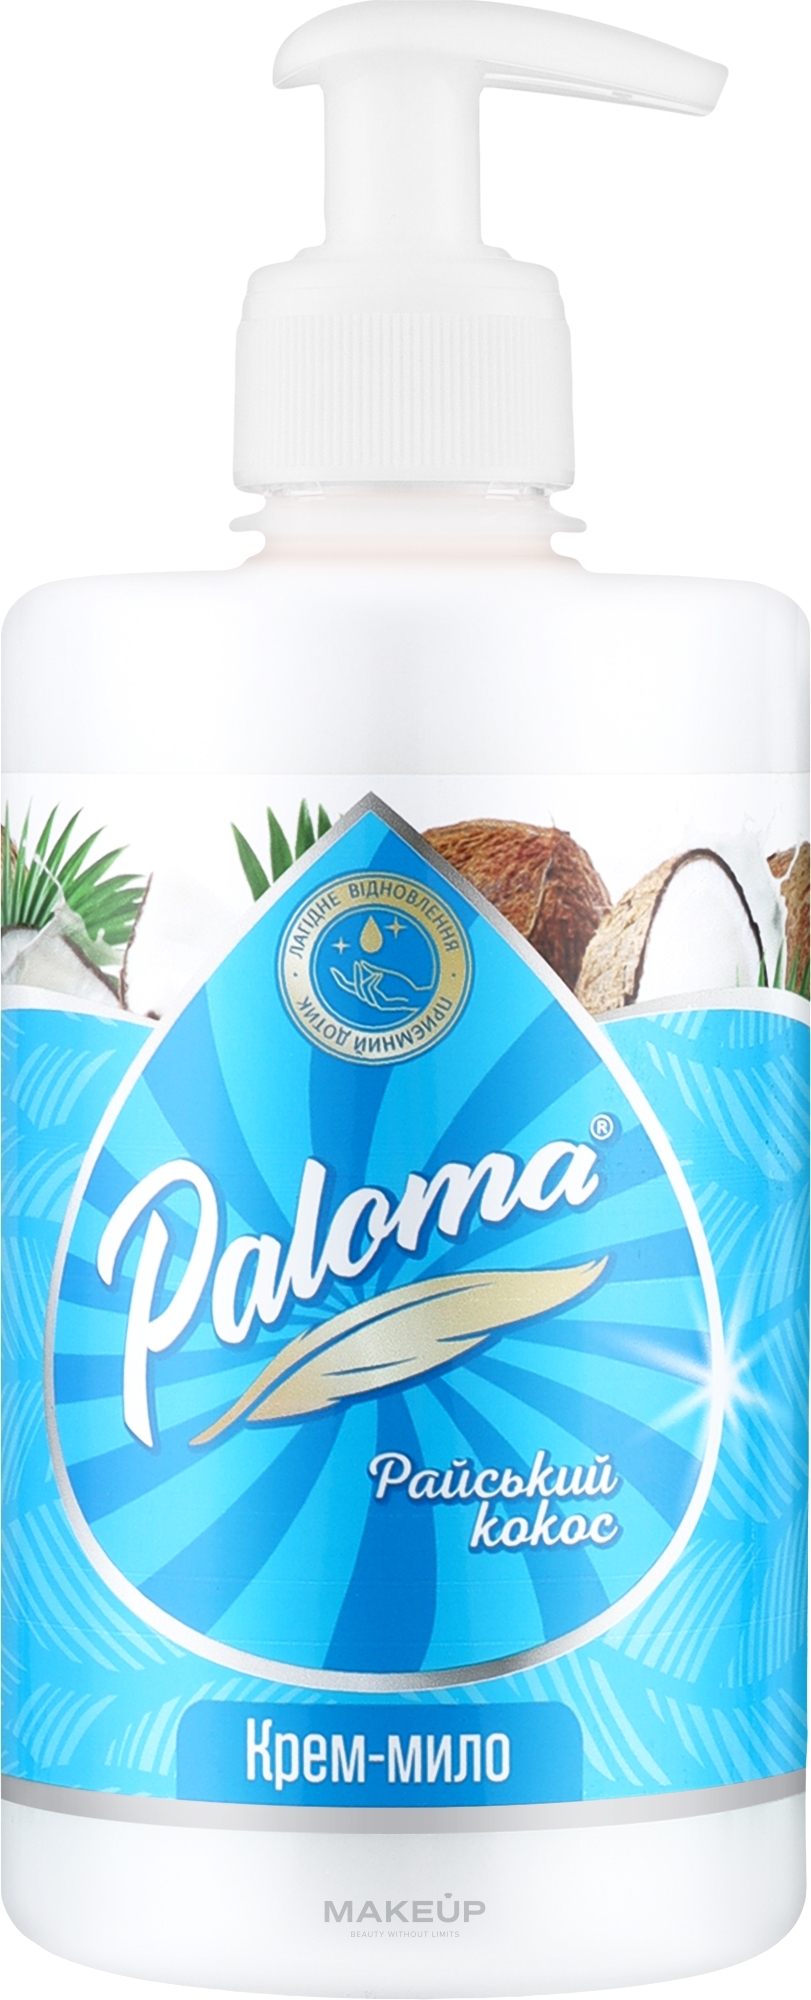 Крем-мыло "Райский кокос" - Paloma — фото 500ml